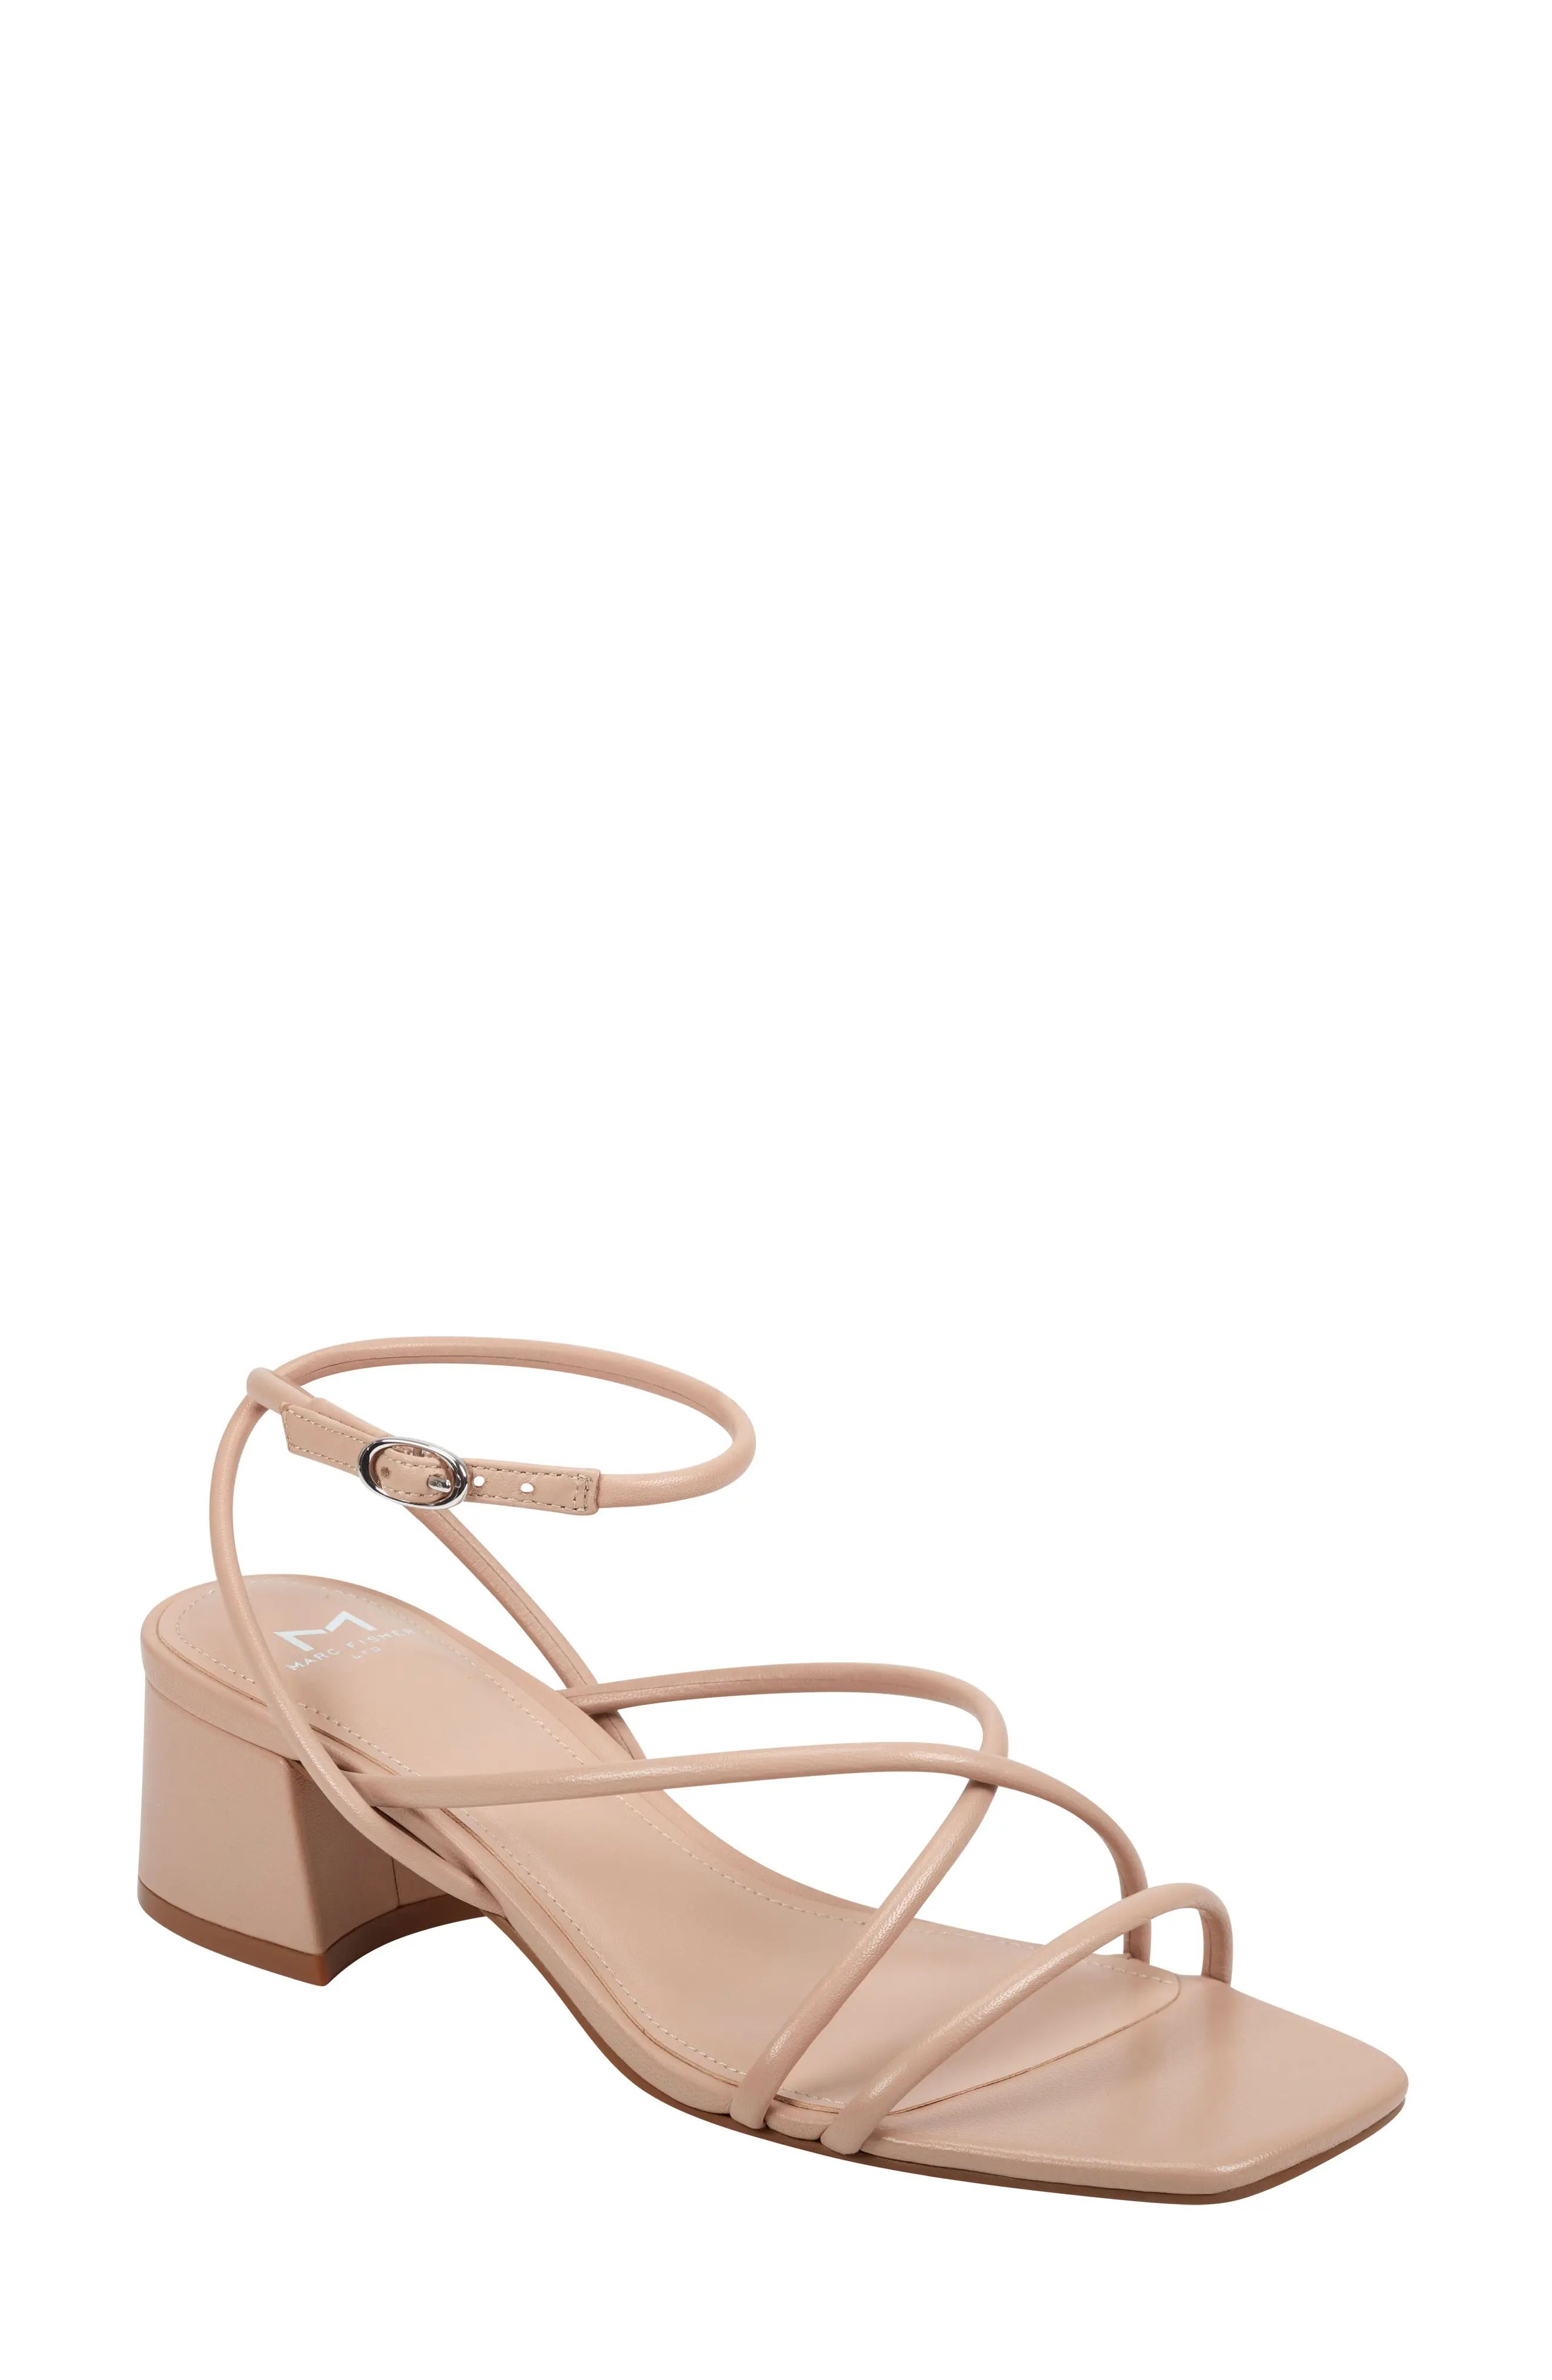 Women's Marc Fisher Ltd Jared Ankle Strap Sandal, Size 10 M - Beige | Nordstrom